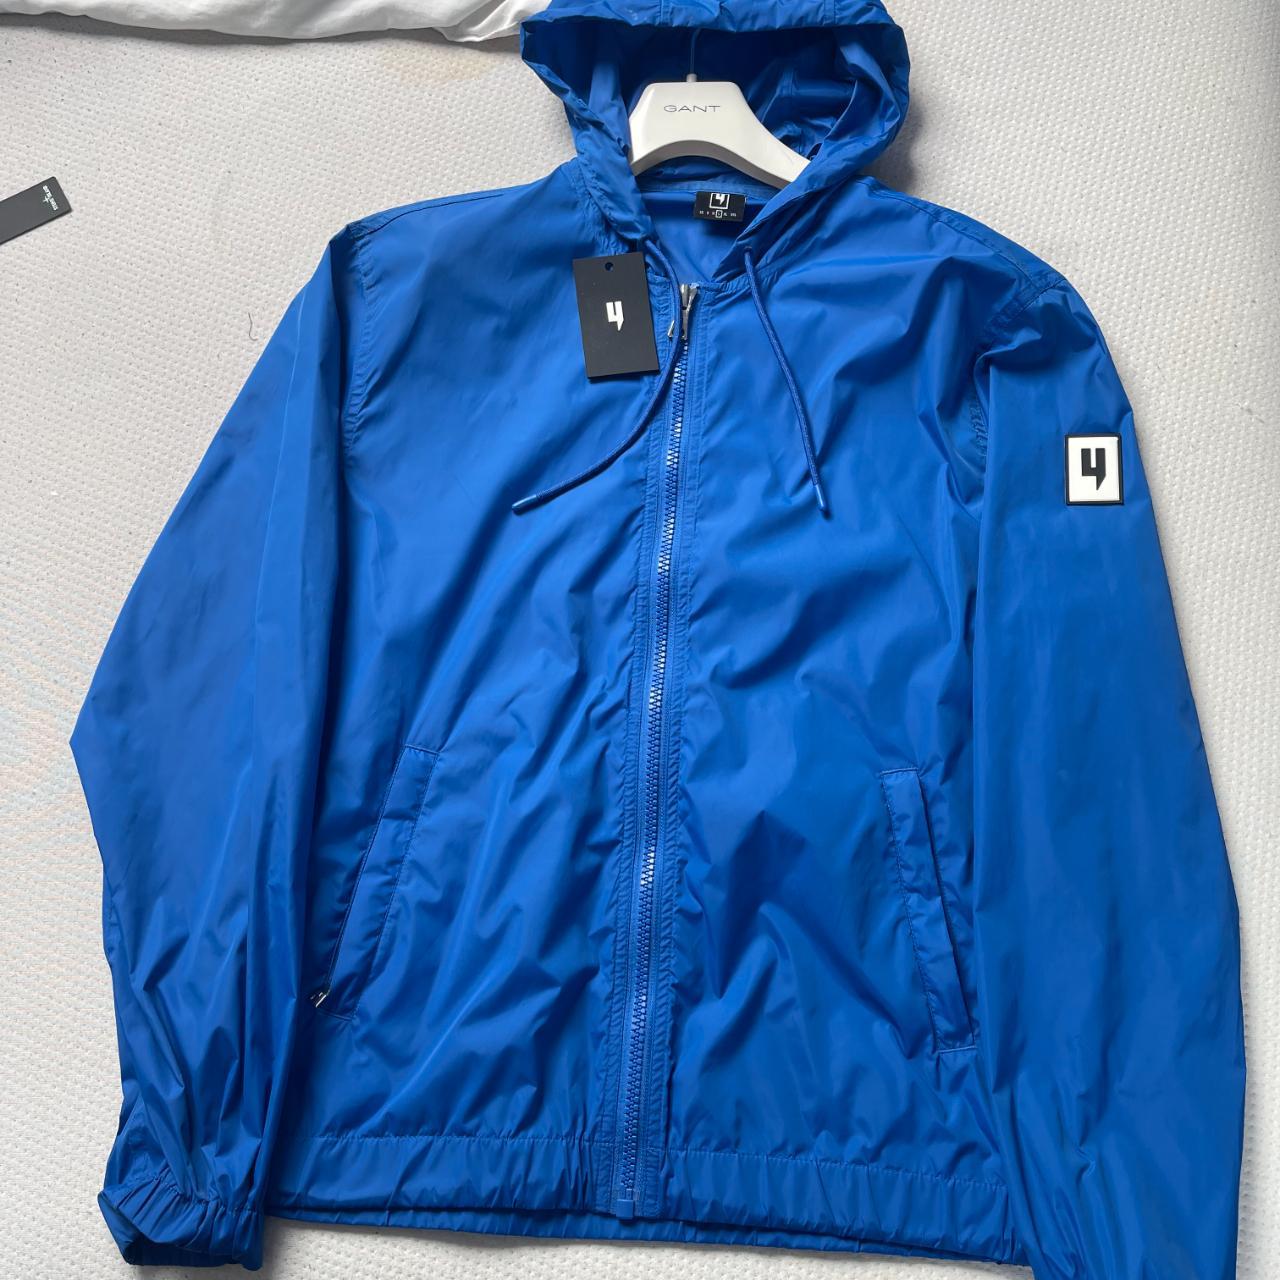 YELIR World Men's blue windcheater jacket 10/10... - Depop